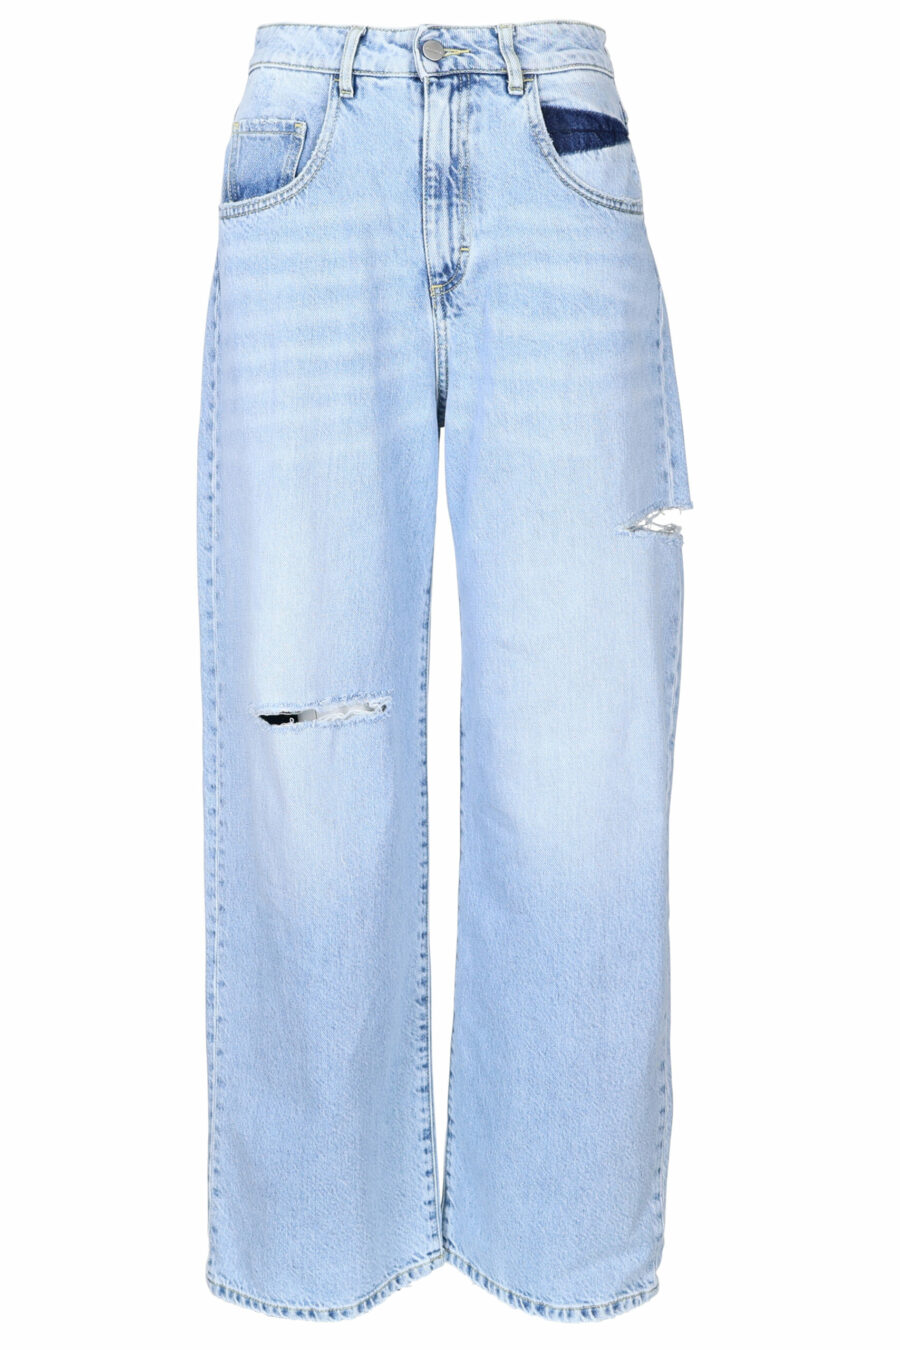 Blaue "poppy" Jeans mit Rissen - 8052691167298 skaliert